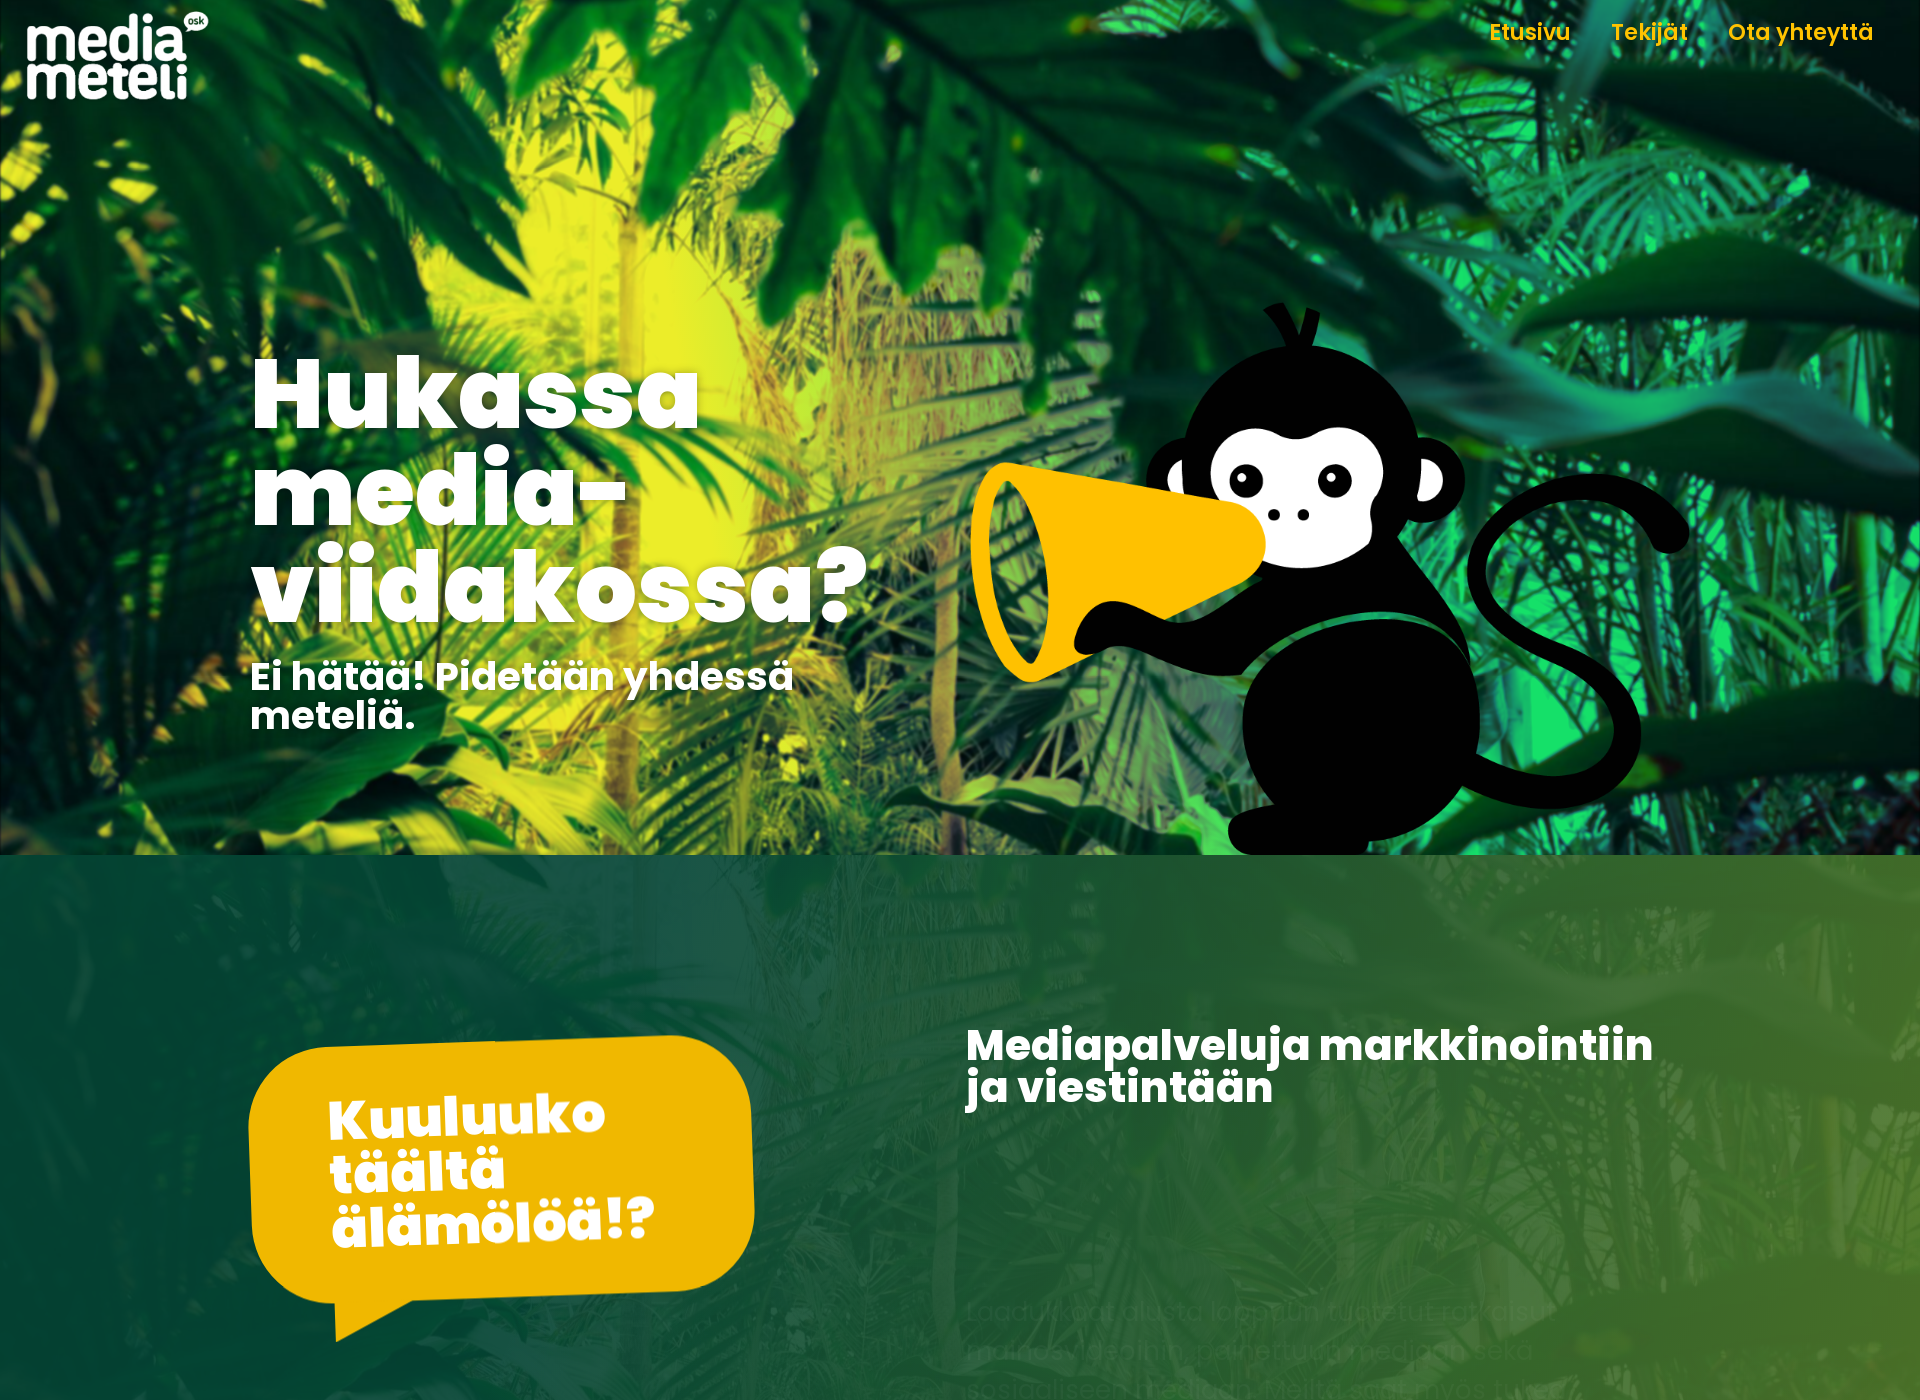 Näyttökuva mediameteli.fi